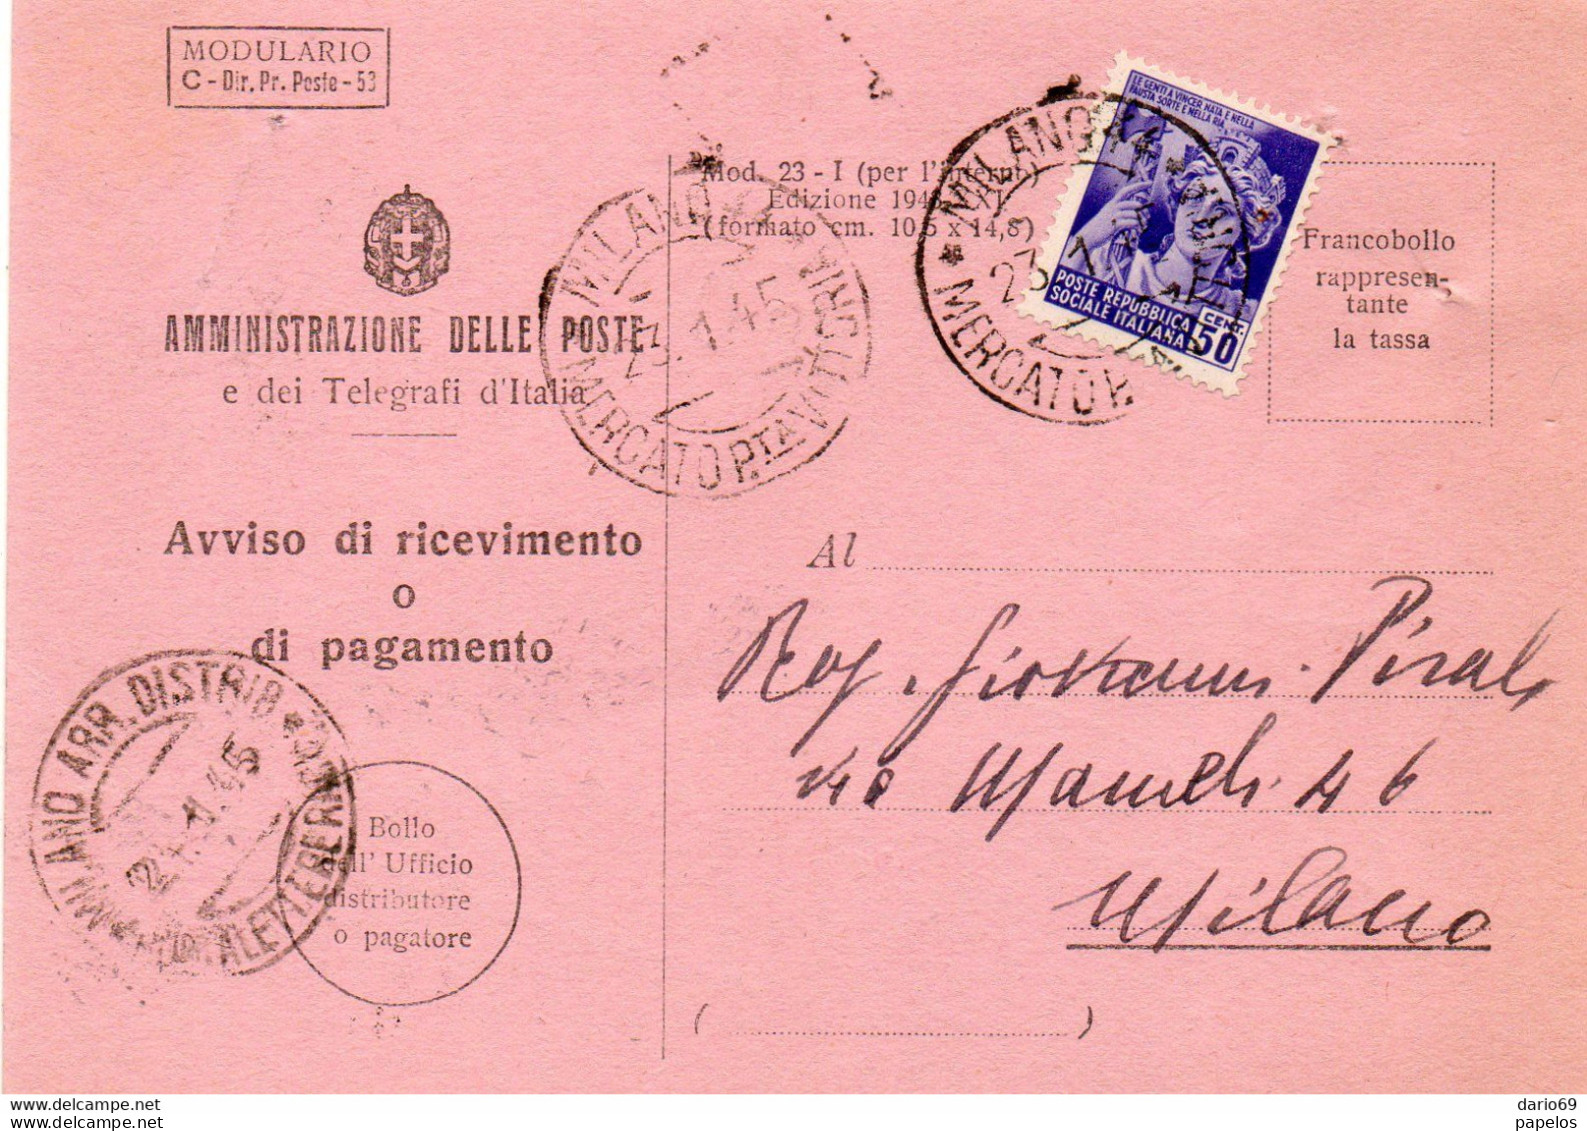 1945 RICEVUTA DI RITORNO CON ANNULLO MILANO MRCATO - Storia Postale